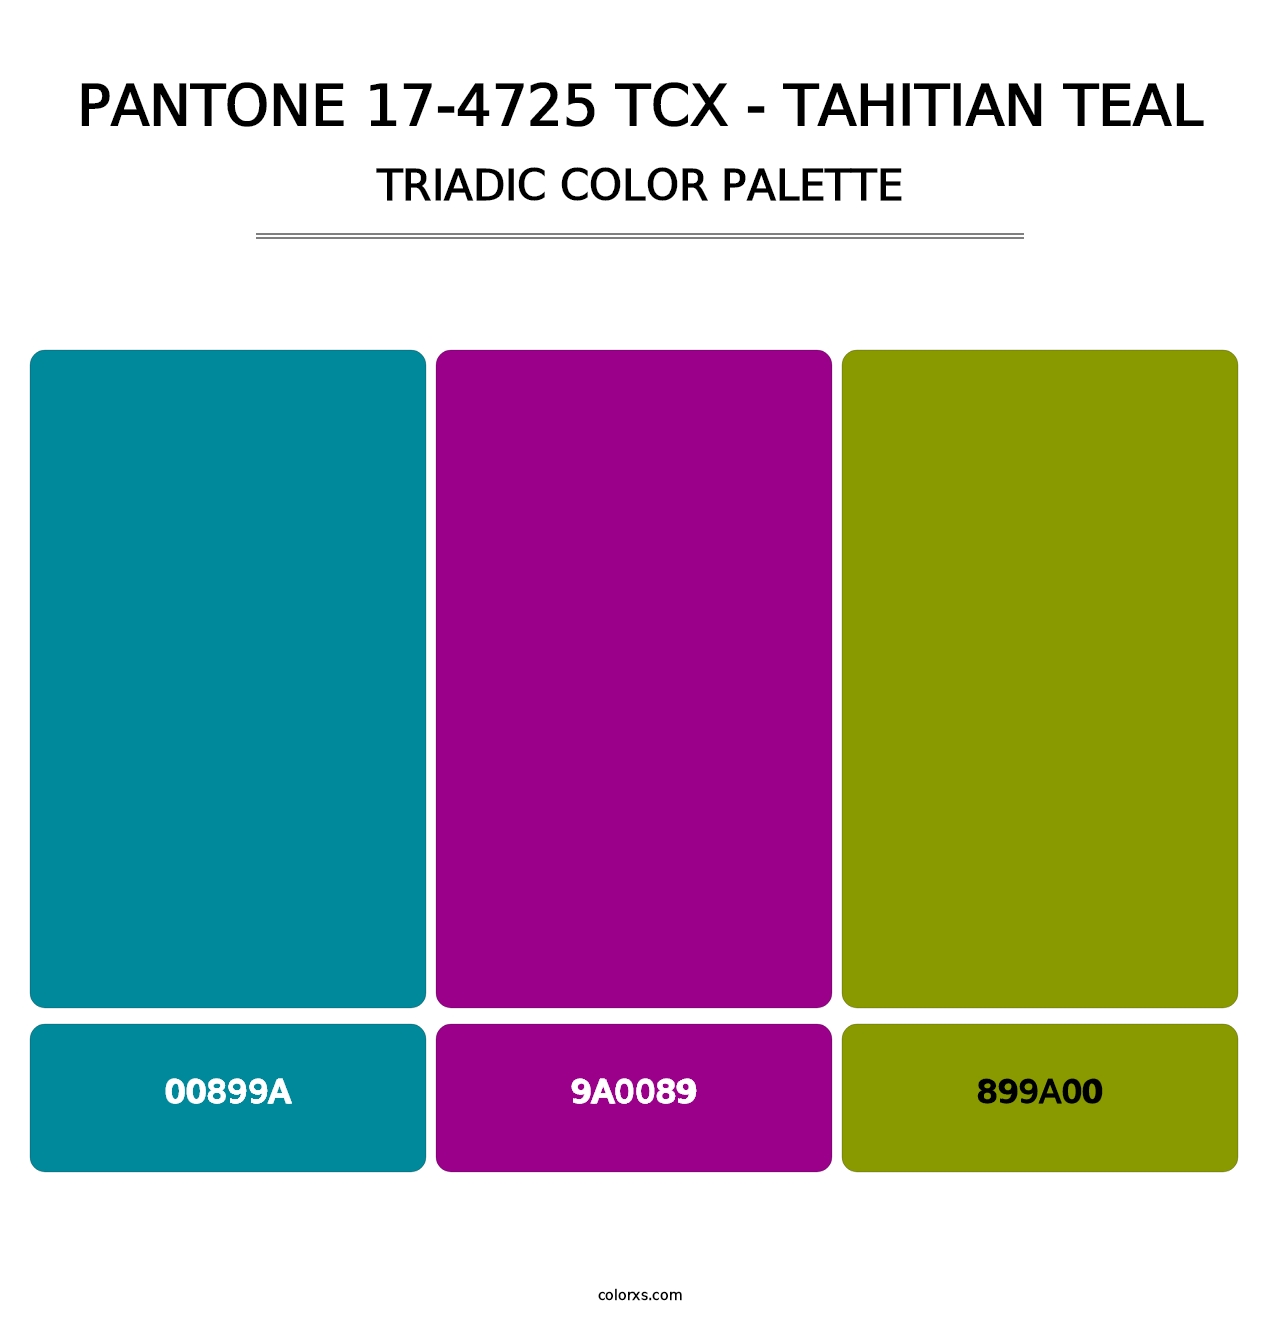 PANTONE 17-4725 TCX - Tahitian Teal - Triadic Color Palette